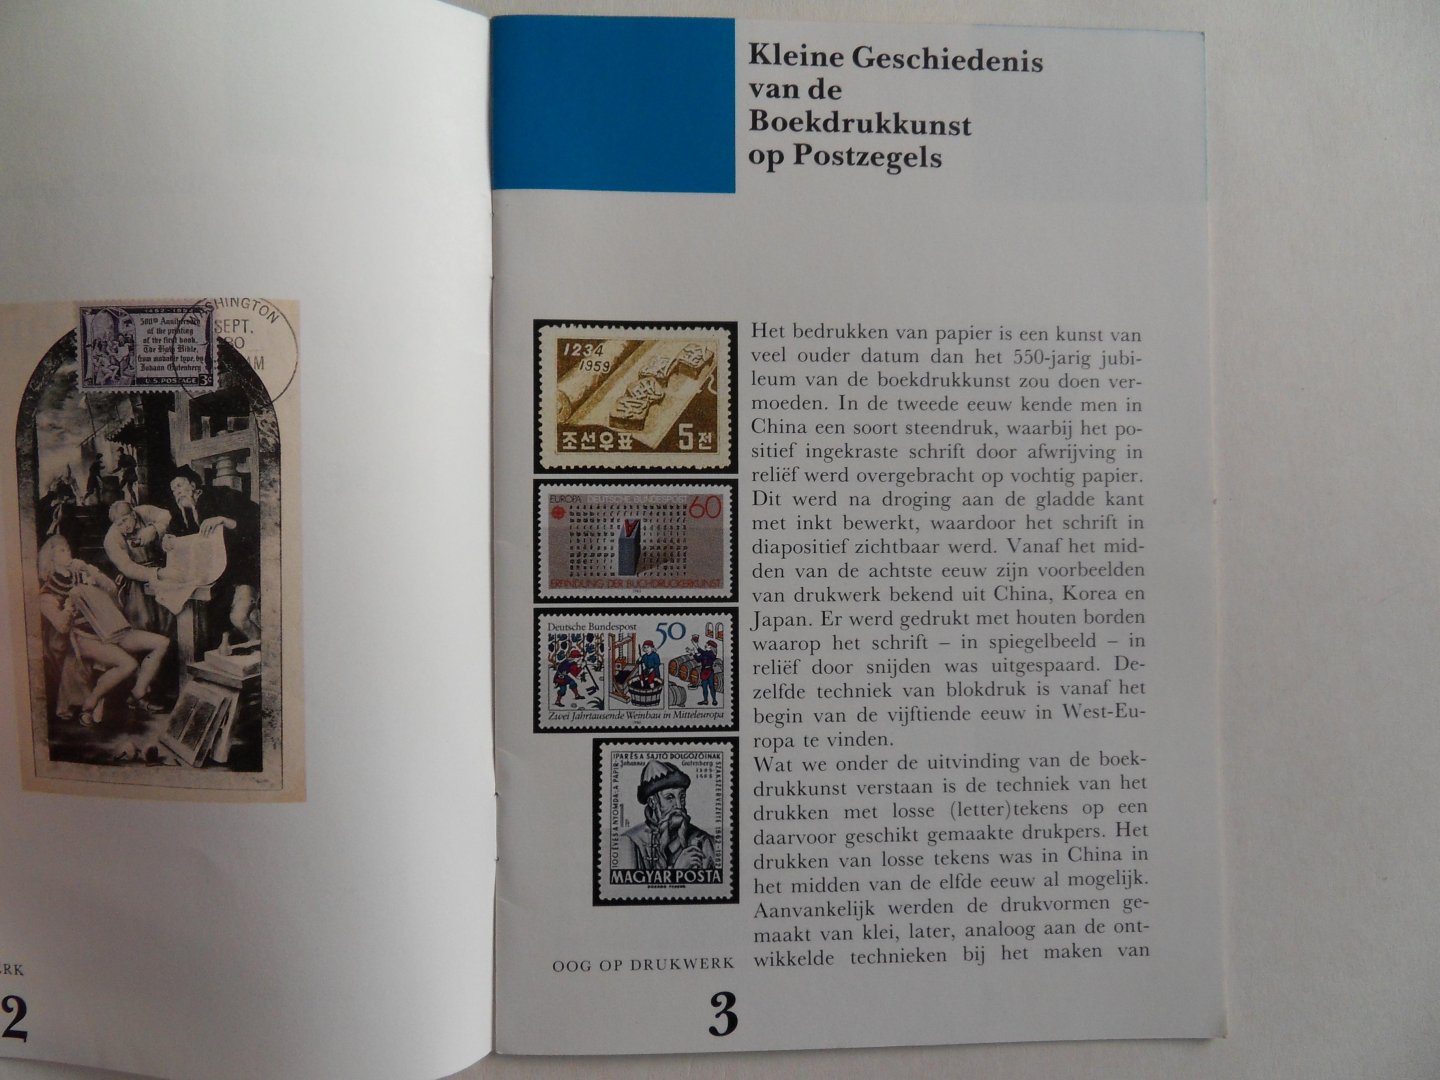 Meurs, G.N. jr.; Simons, C.F.J. - Kleine geschiedenis van de Boekdrukkunst op Postzegels. - Met circa 70 kleurenafbeeldingen van postzegels. [ Verscheen in de serie "Oog op Drukwerk".